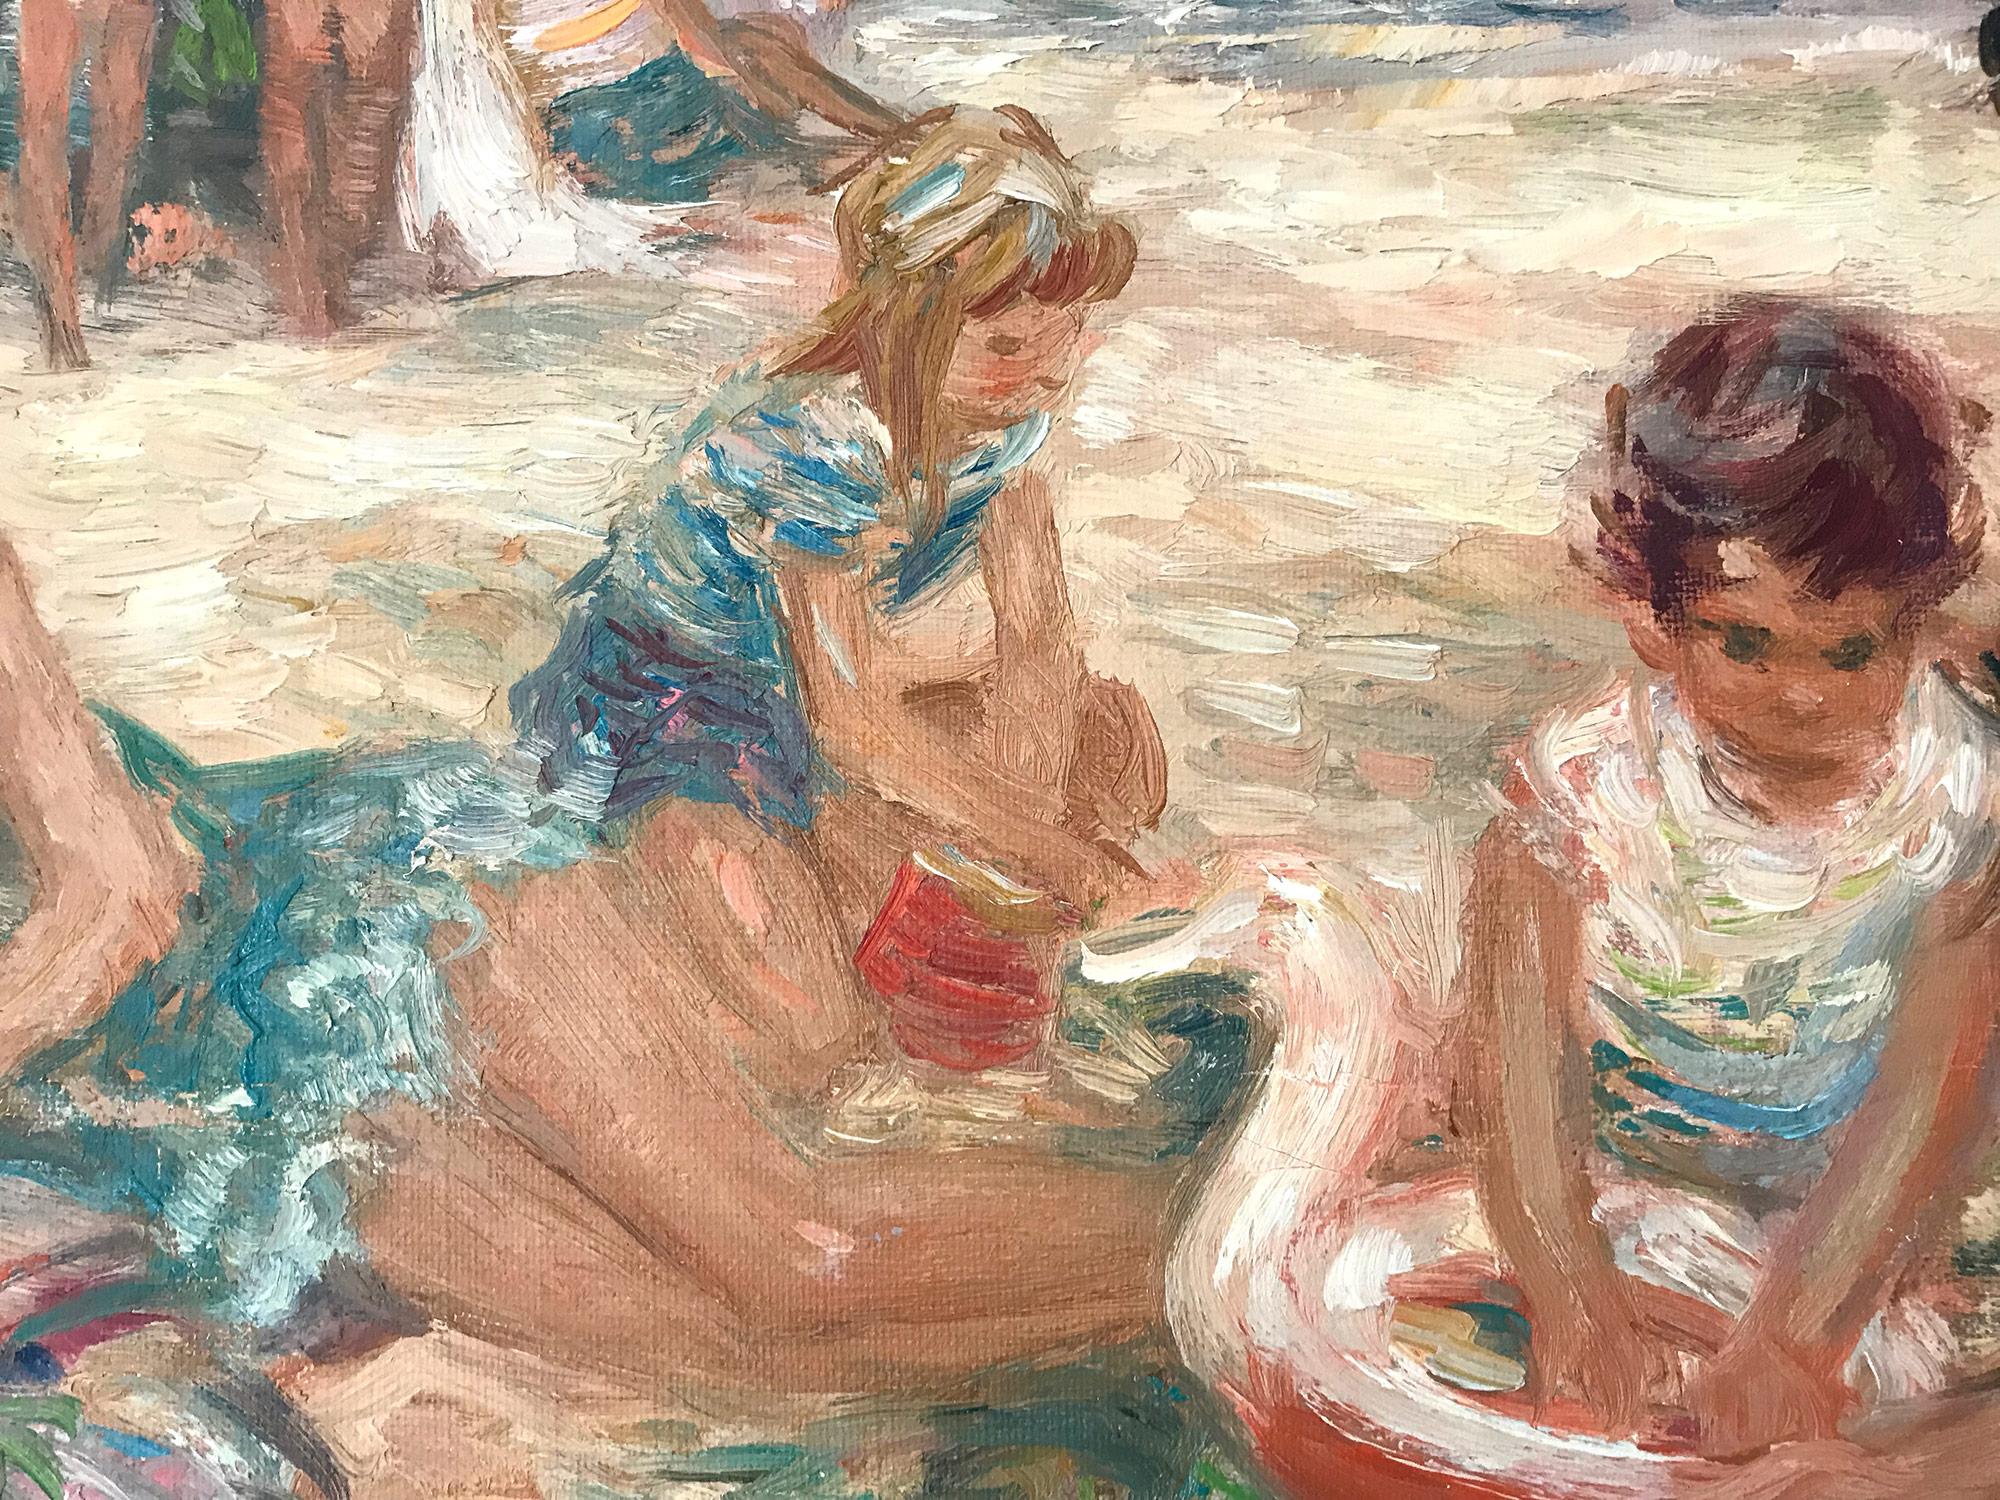 Une superbe peinture à l'huile représentant des personnages à la plage au 20e siècle. Duteurtre était connu pour ses charmantes scènes figuratives intimes dépeignant la vie en Europe. Il était actif, reprenant les sujets des marchés, des plages, des